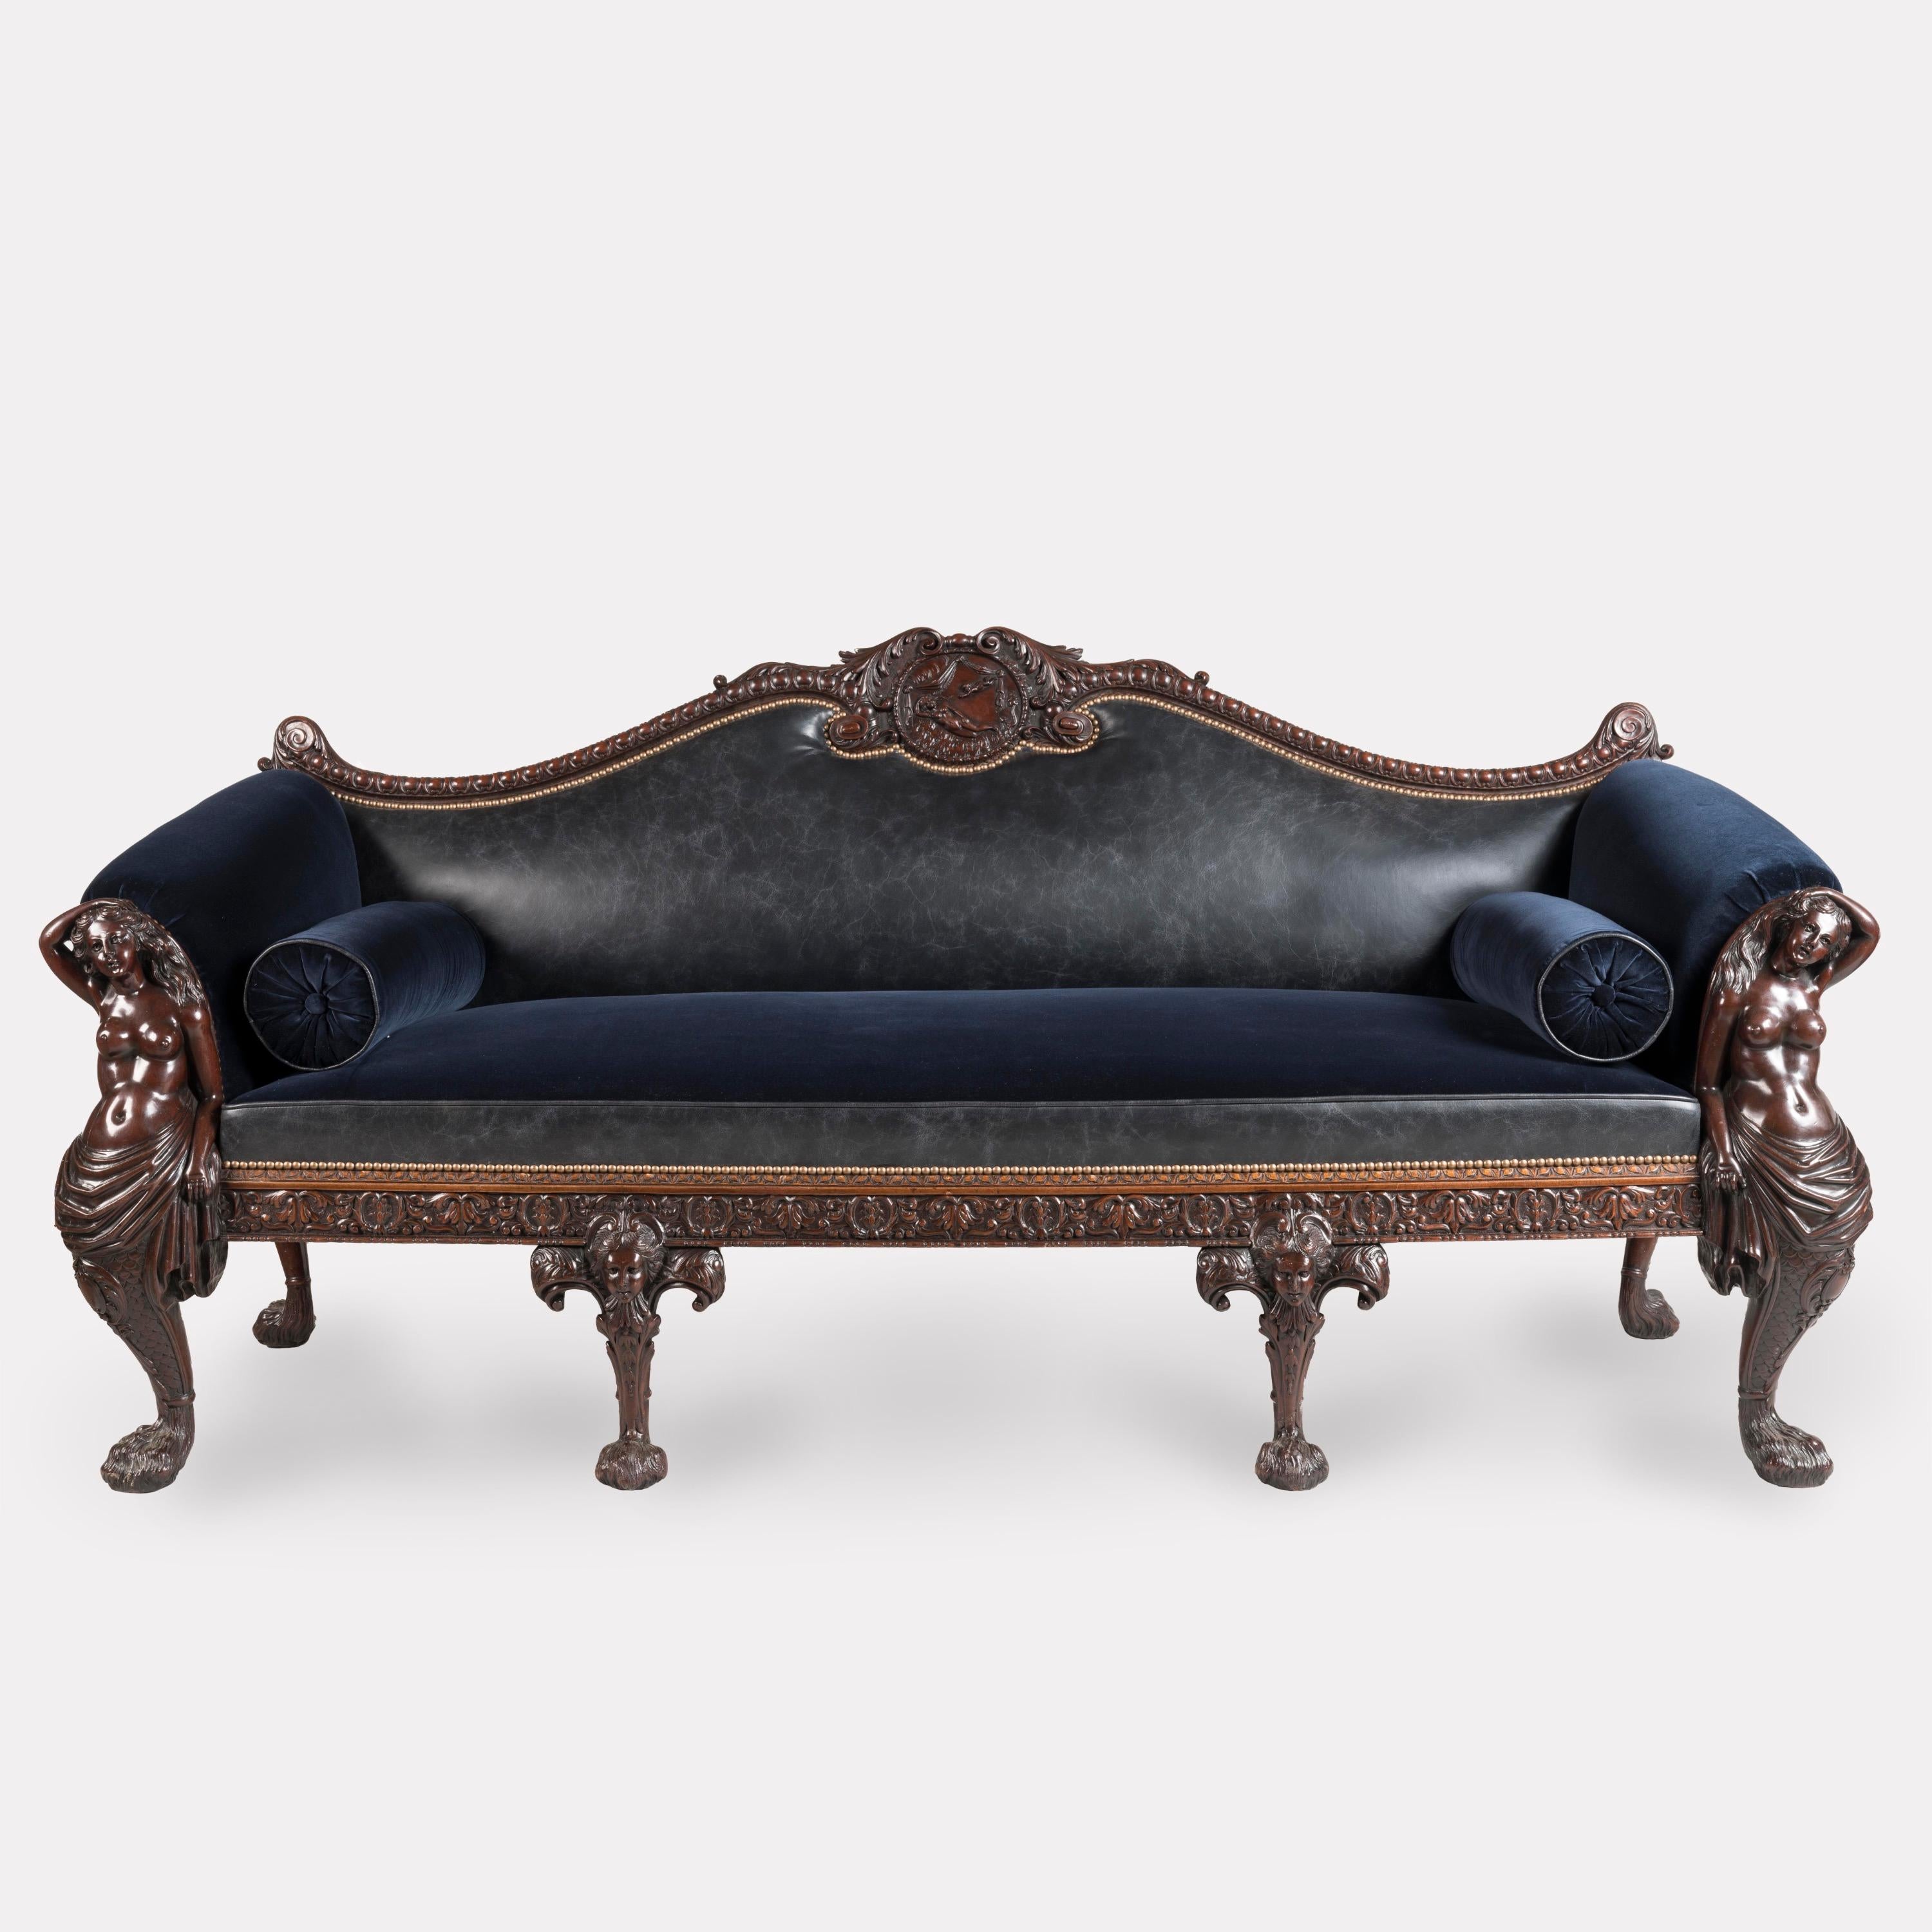 Eine sehr schöne Couch nach einem Design von William Linnell 
Fest zugeschrieben an Maple & Company of London

Das Mahagoni-Sofa hat die Endarmstützen mit liegenden Meerjungfrauen geschnitzt, die in georgianischen 